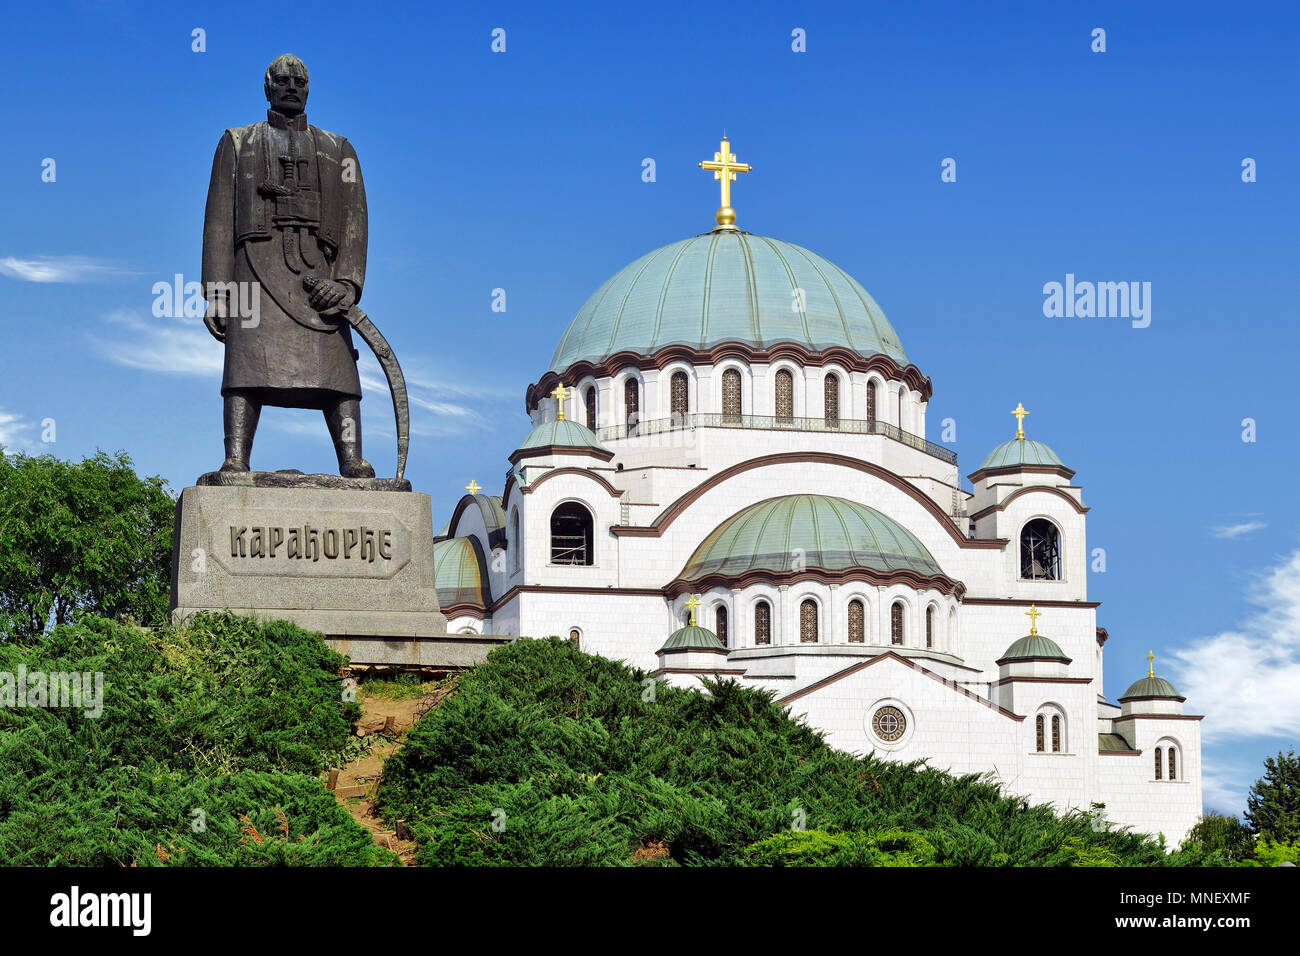 Belgrado, Serbia, Monumento a Karadjordje con la Iglesia de San Sava en el fondo. Foto de stock